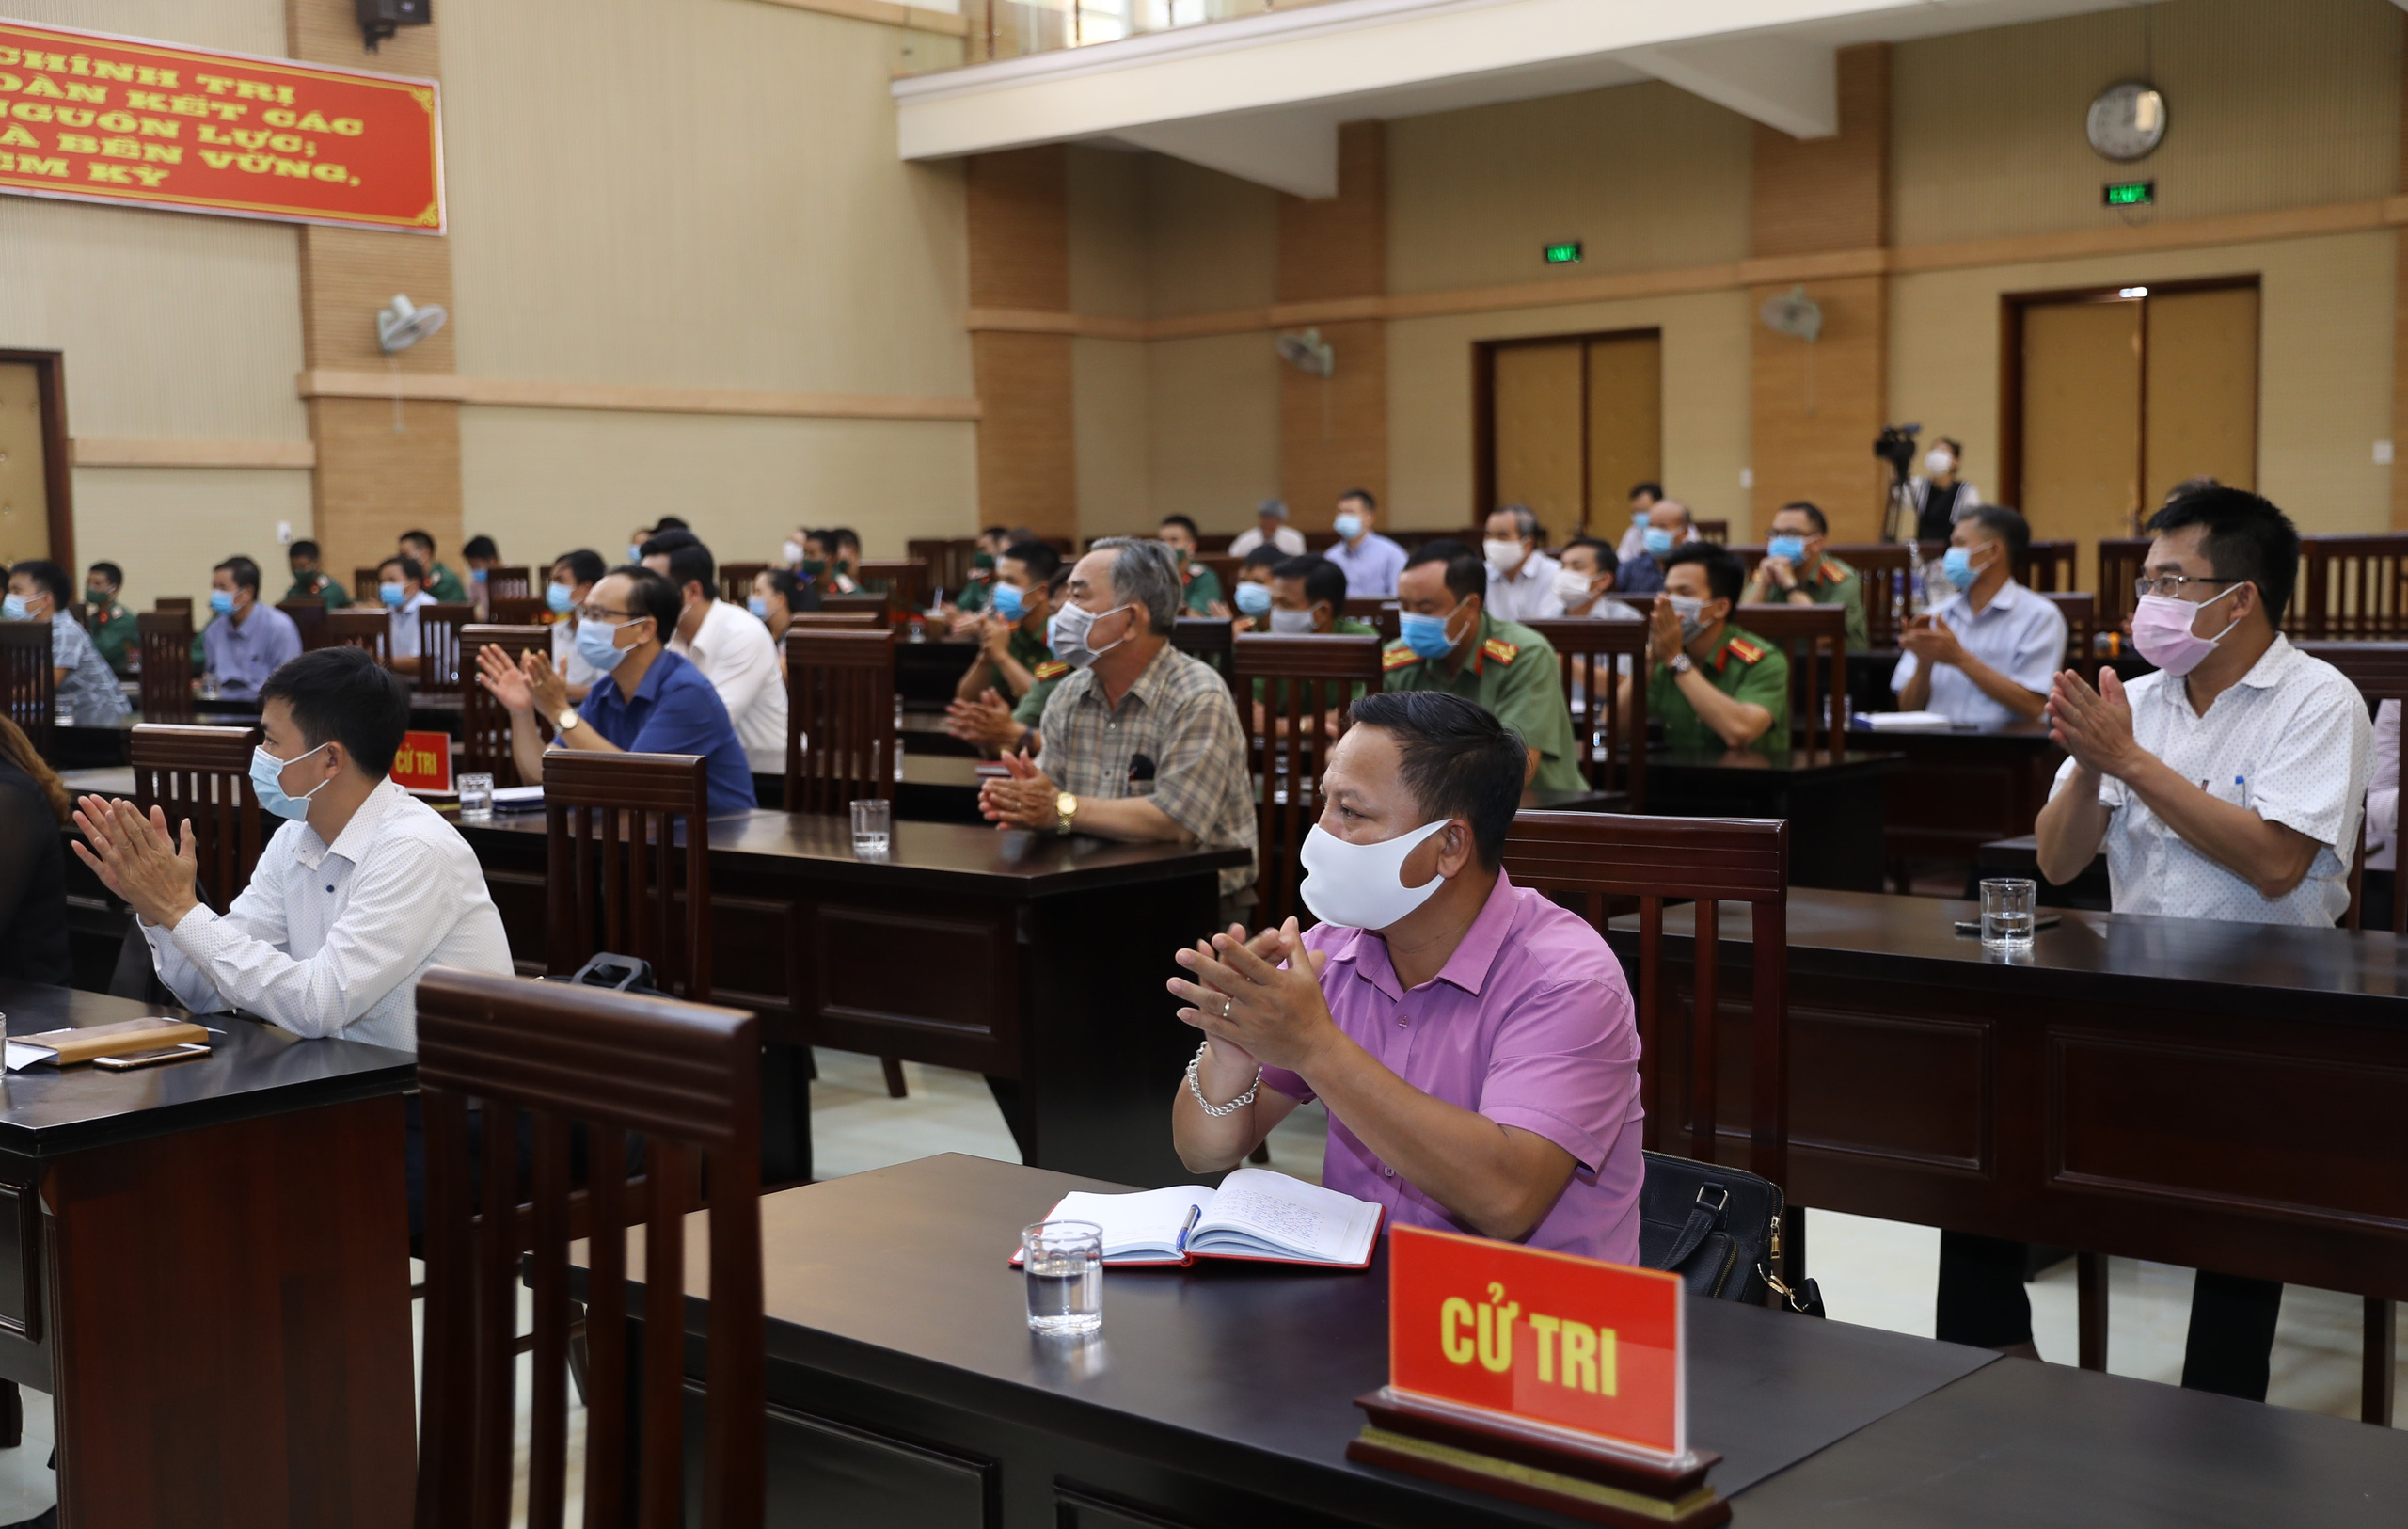 Cử tri tỉnh Kon Tum: Bộ trưởng Nguyễn Văn Hùng đã nói “đúng” và “trúng” những khó khăn, tồn tại của địa phương - Ảnh 3.